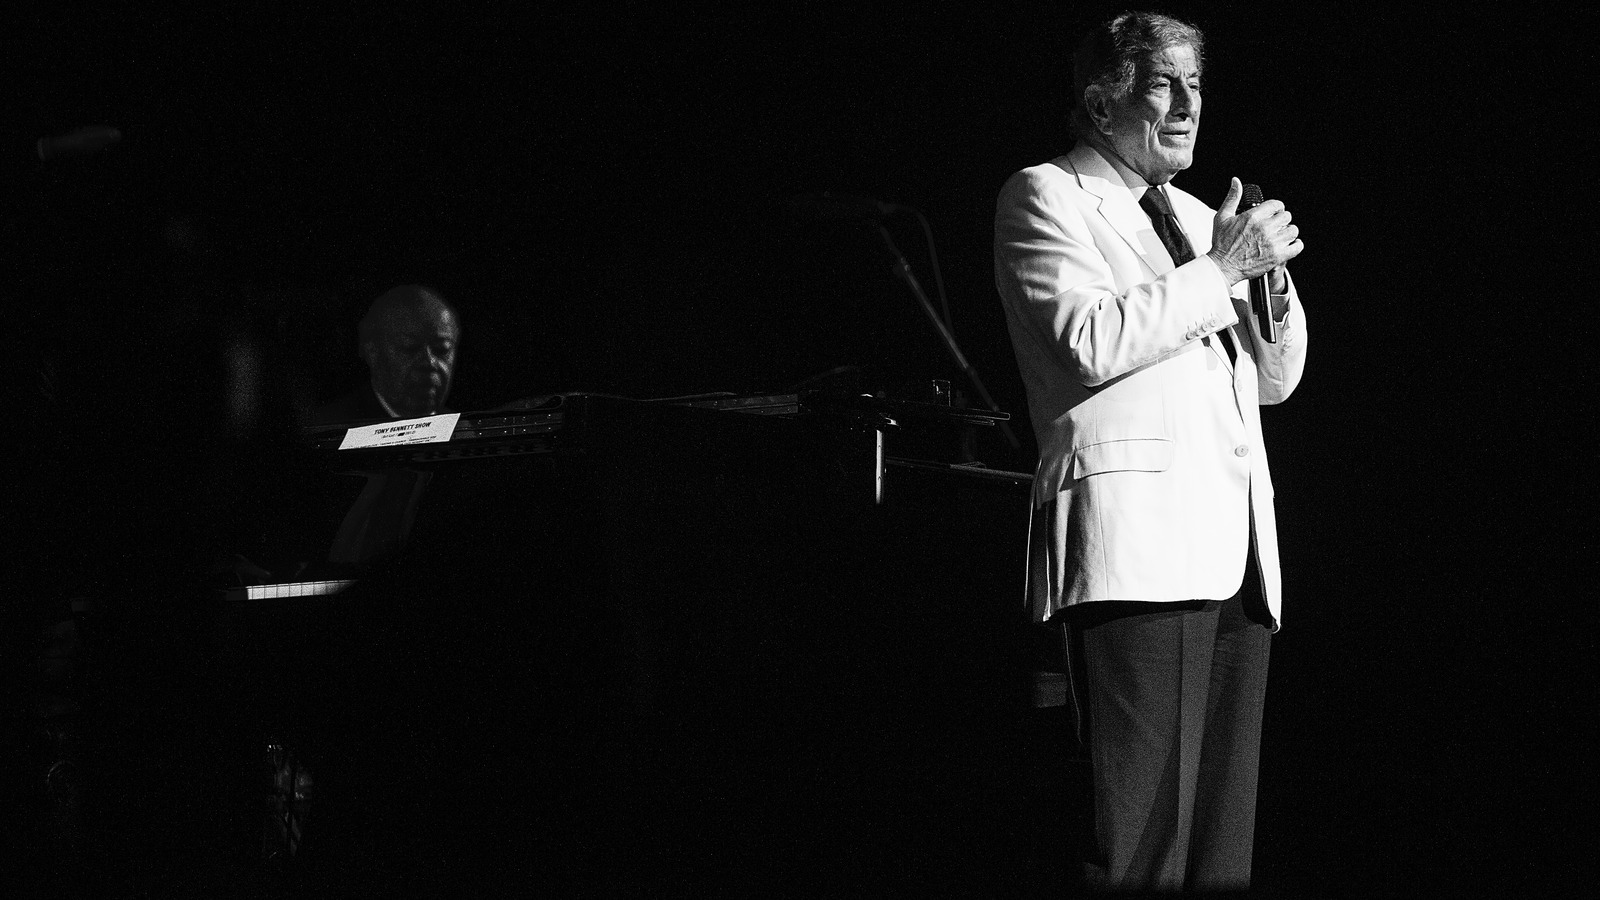 Tony Bennett, Legendary Singer, Has Died At 96